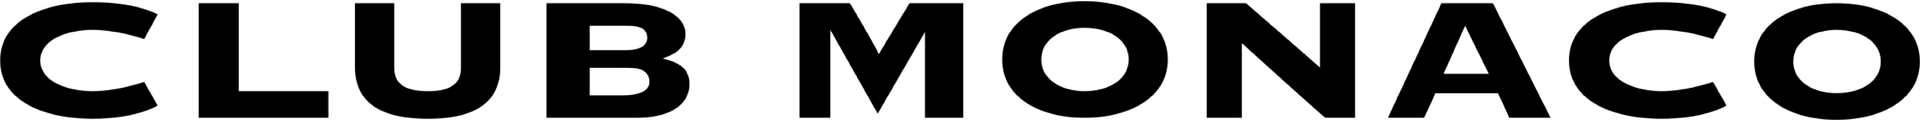 CLUB MONACO logo de circulaire